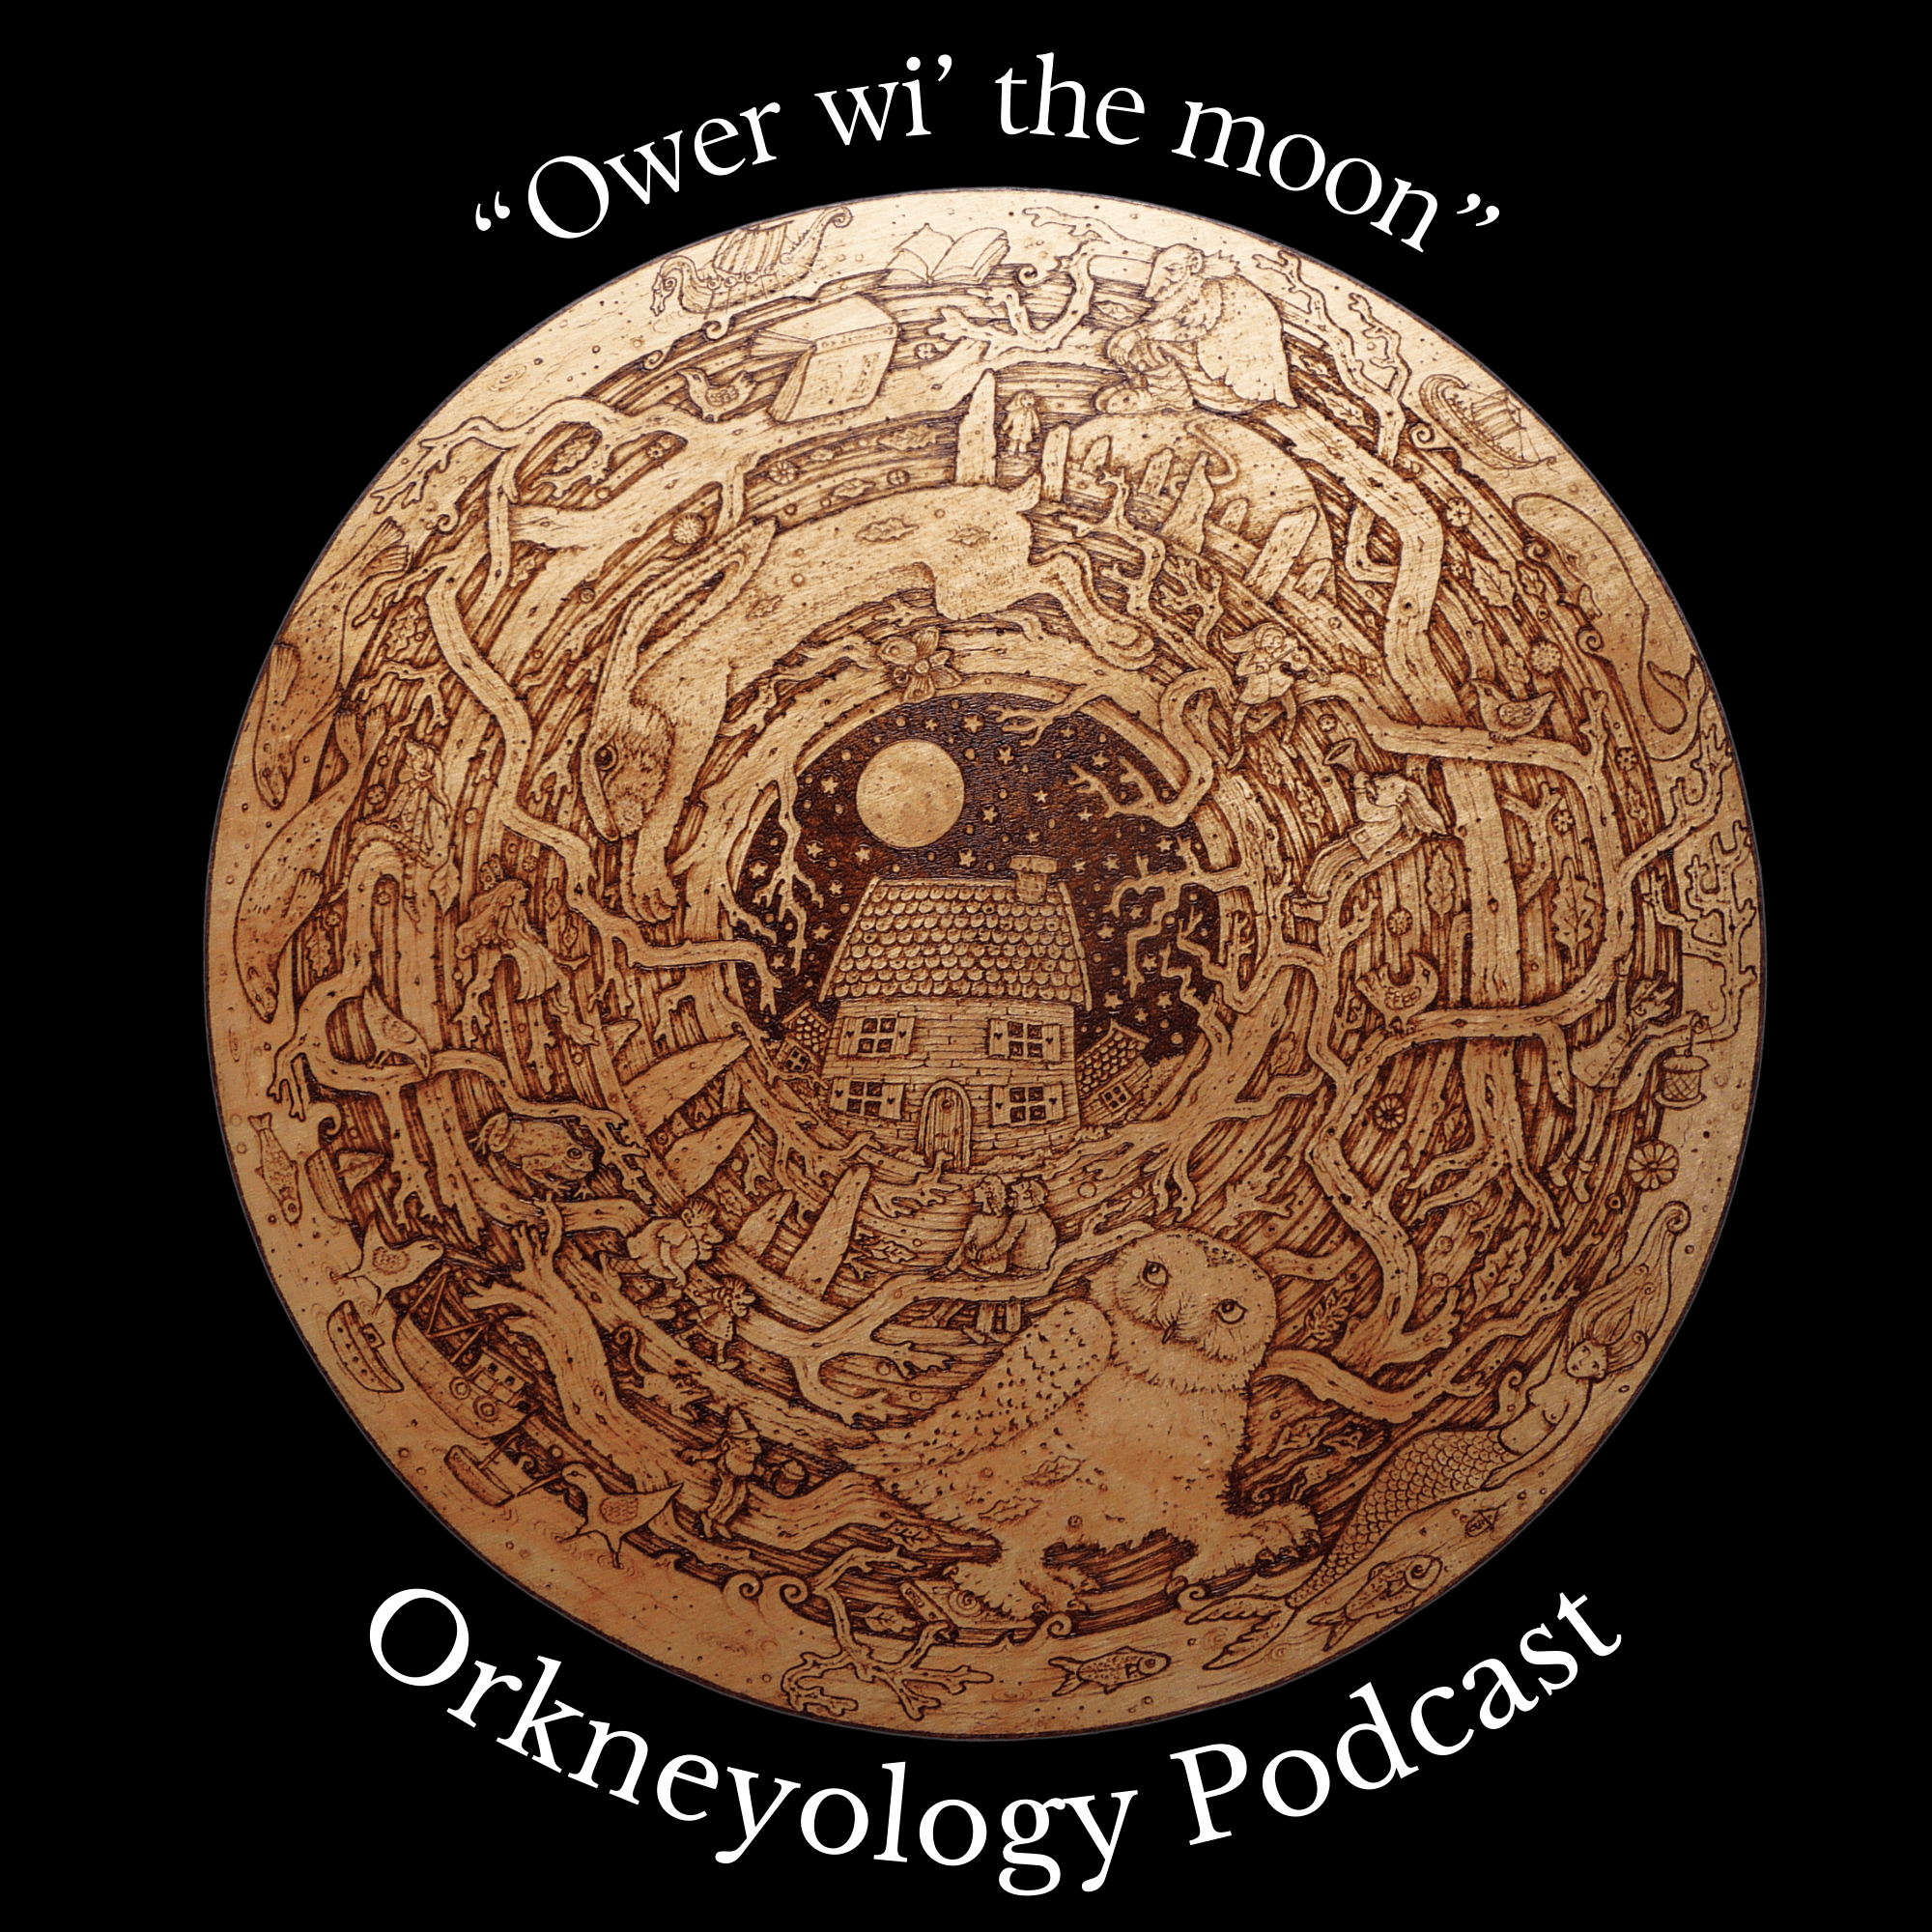 Orkneyology-Podcast